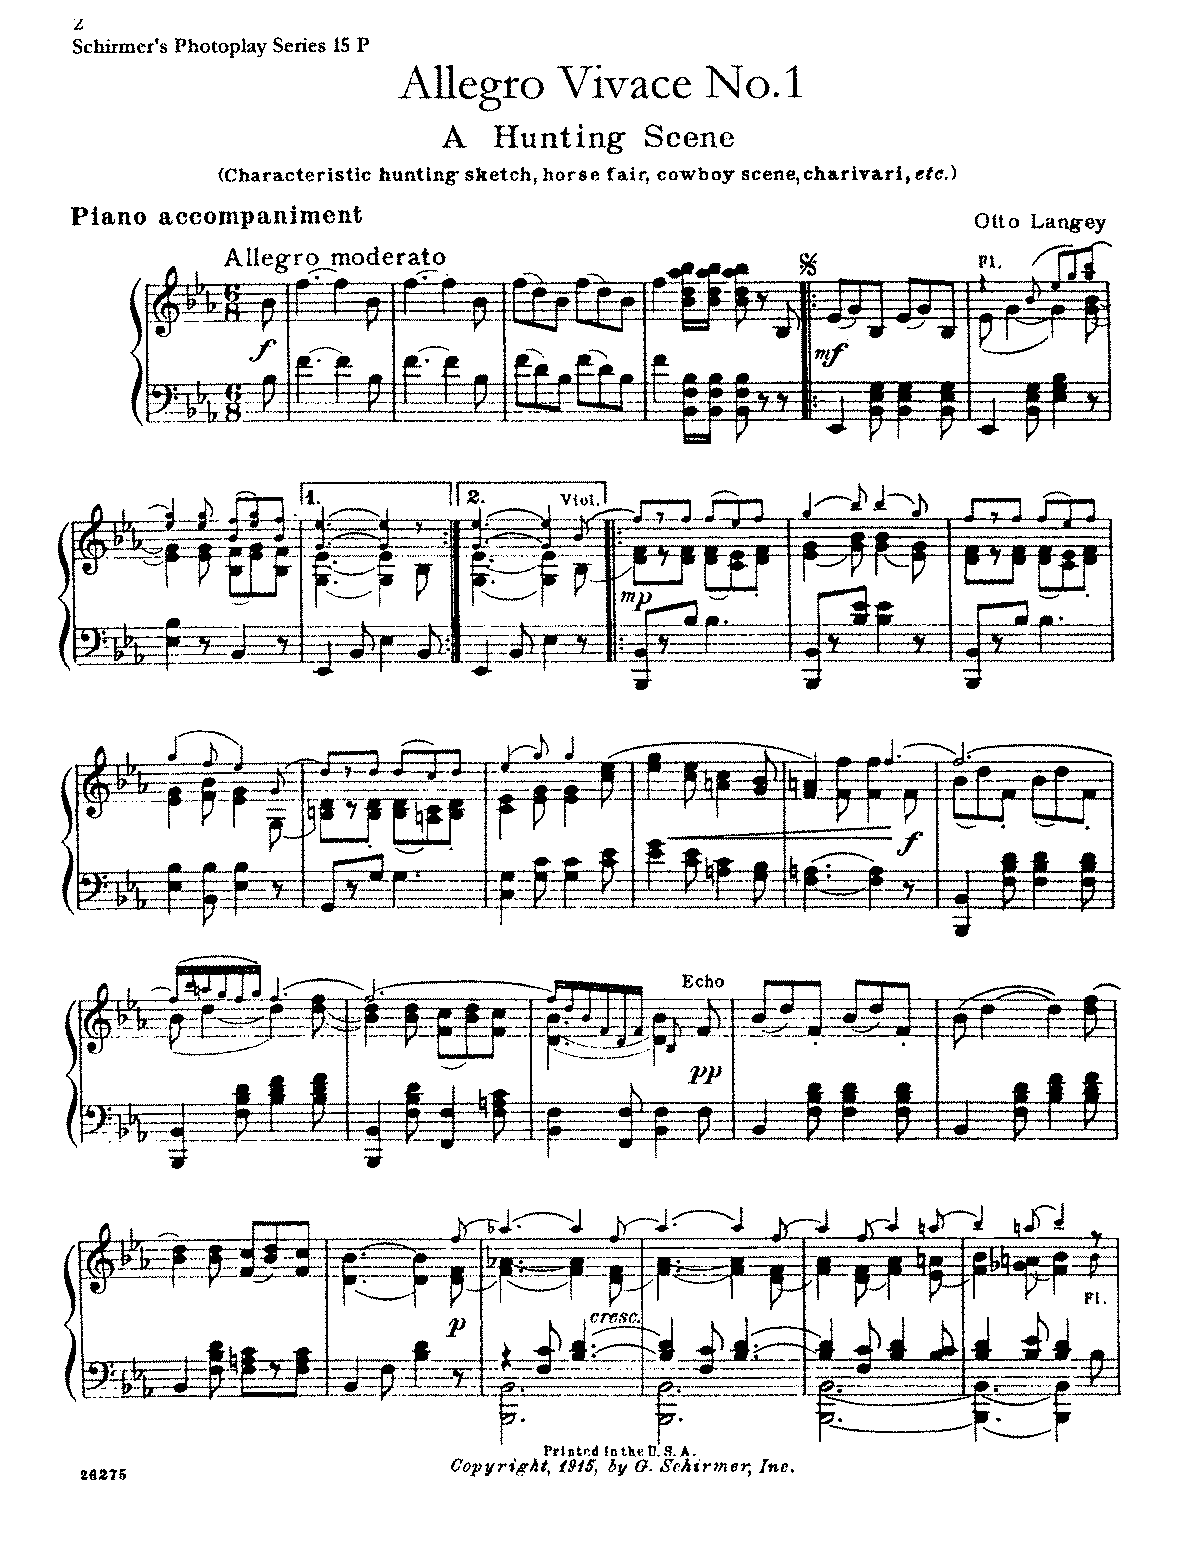 Allegro vivace No.1 (Langey, Otto) - IMSLP